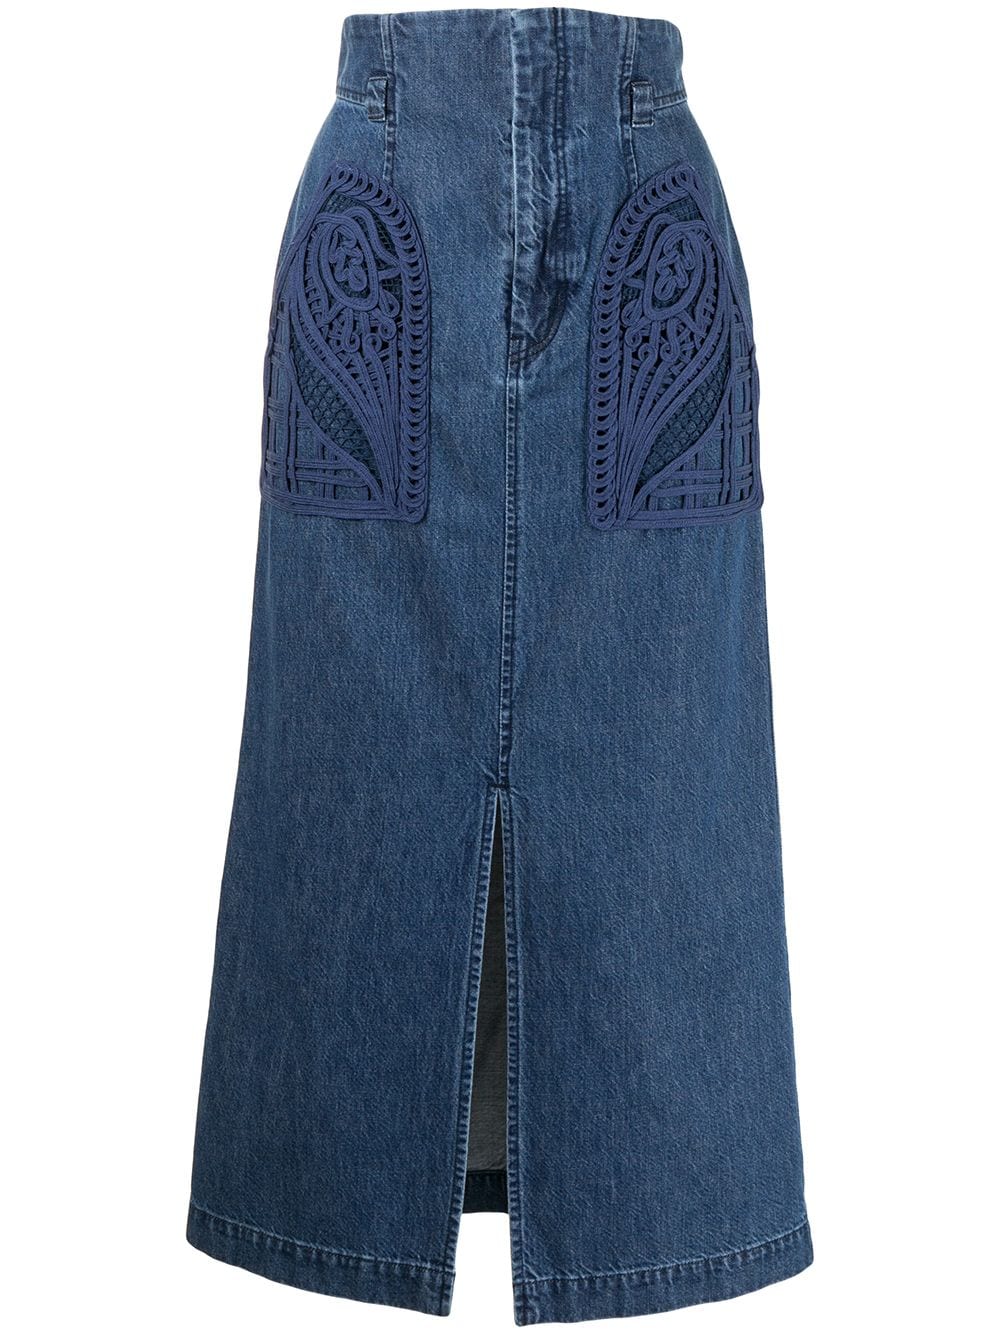 фото Mame kurogouchi джинсовая юбка с вышивкой